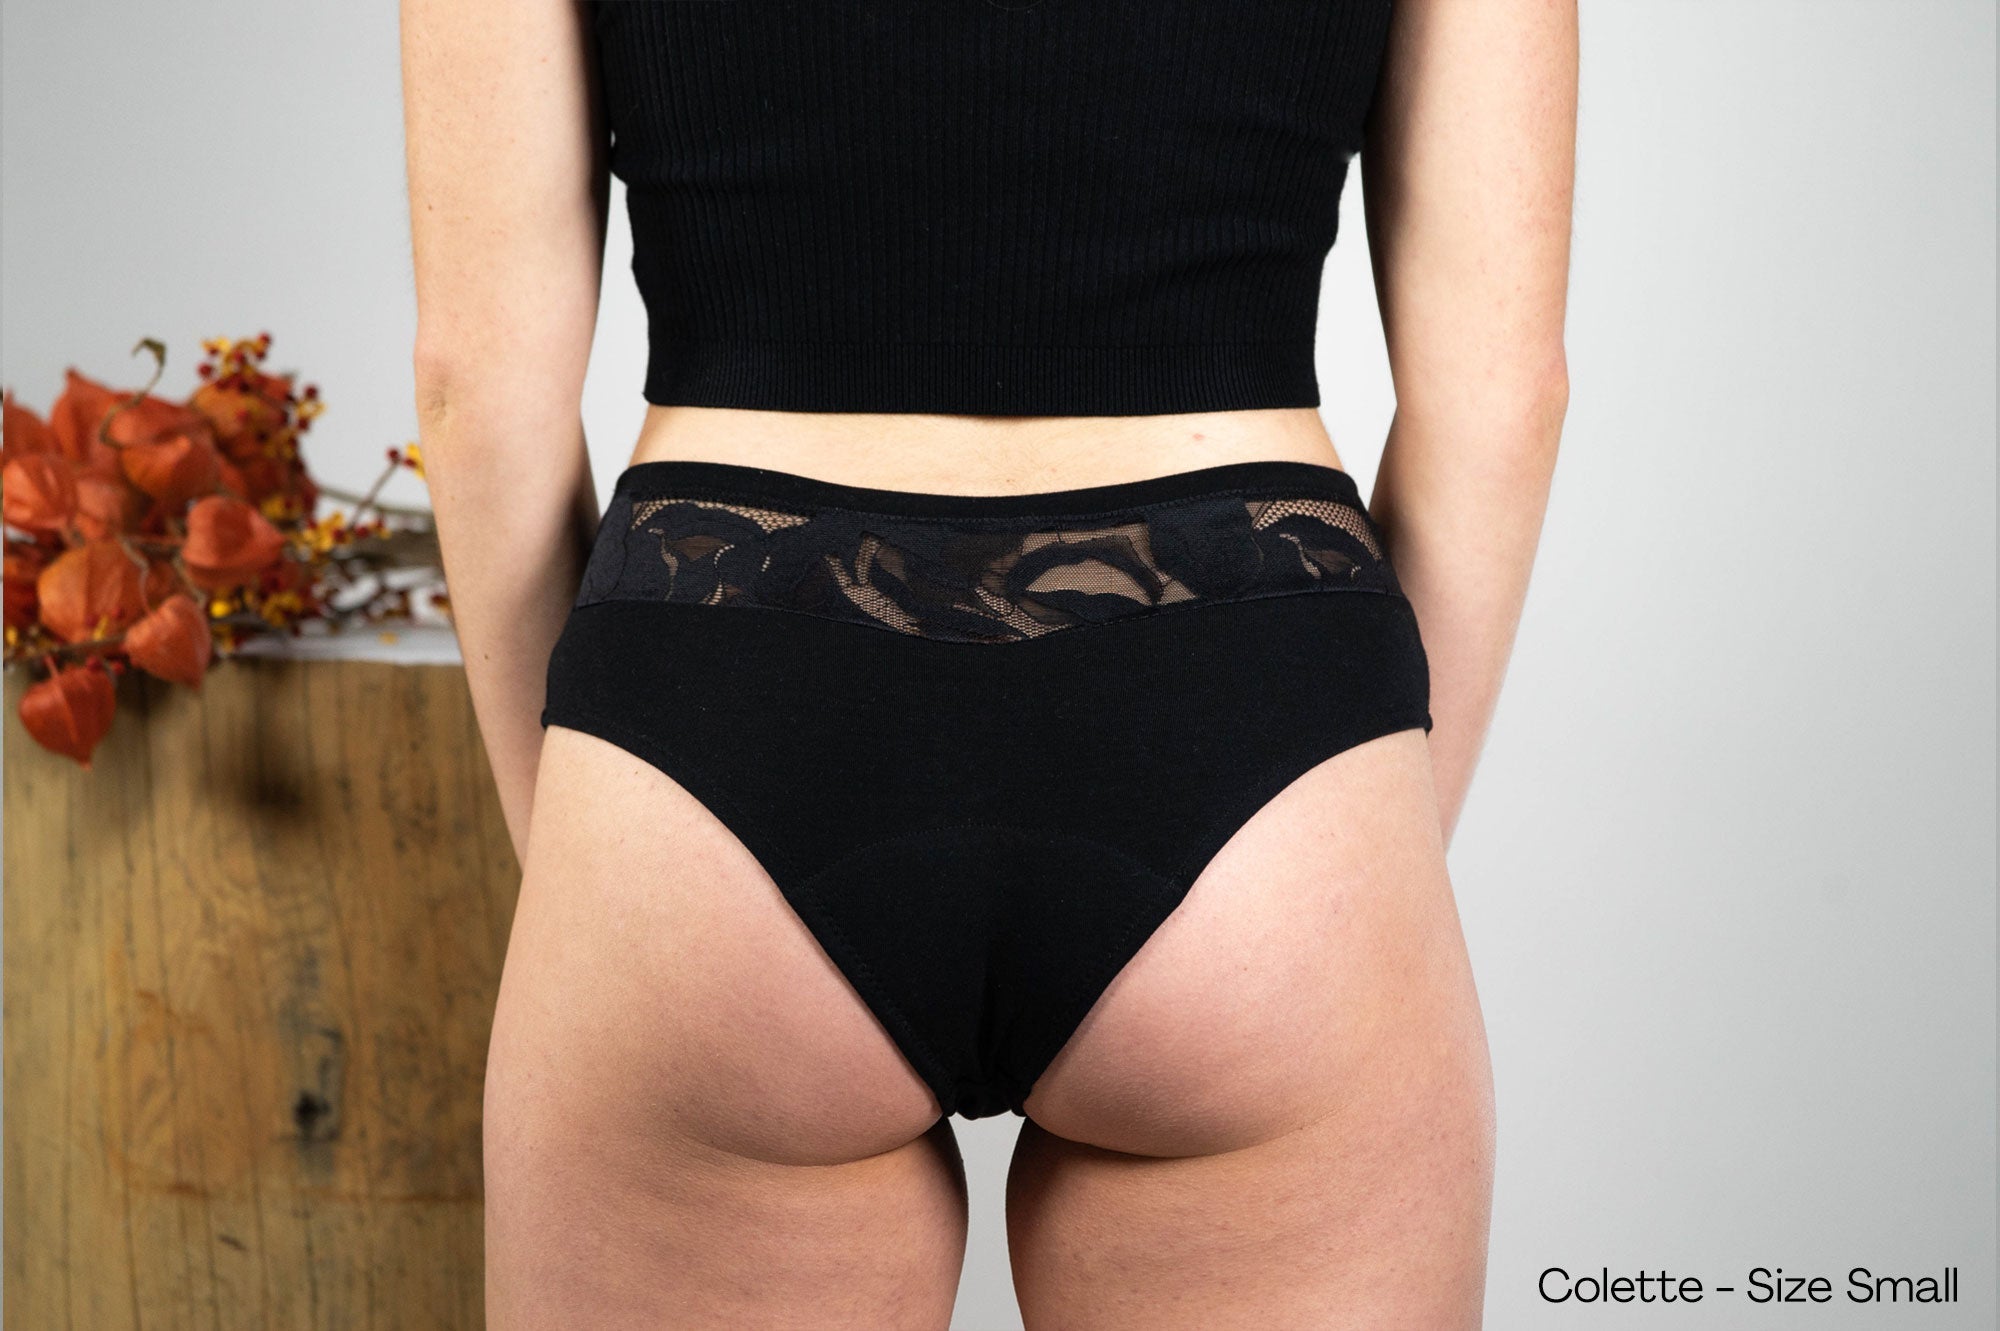 COLETTE cheeky period underwear - Rosaseven